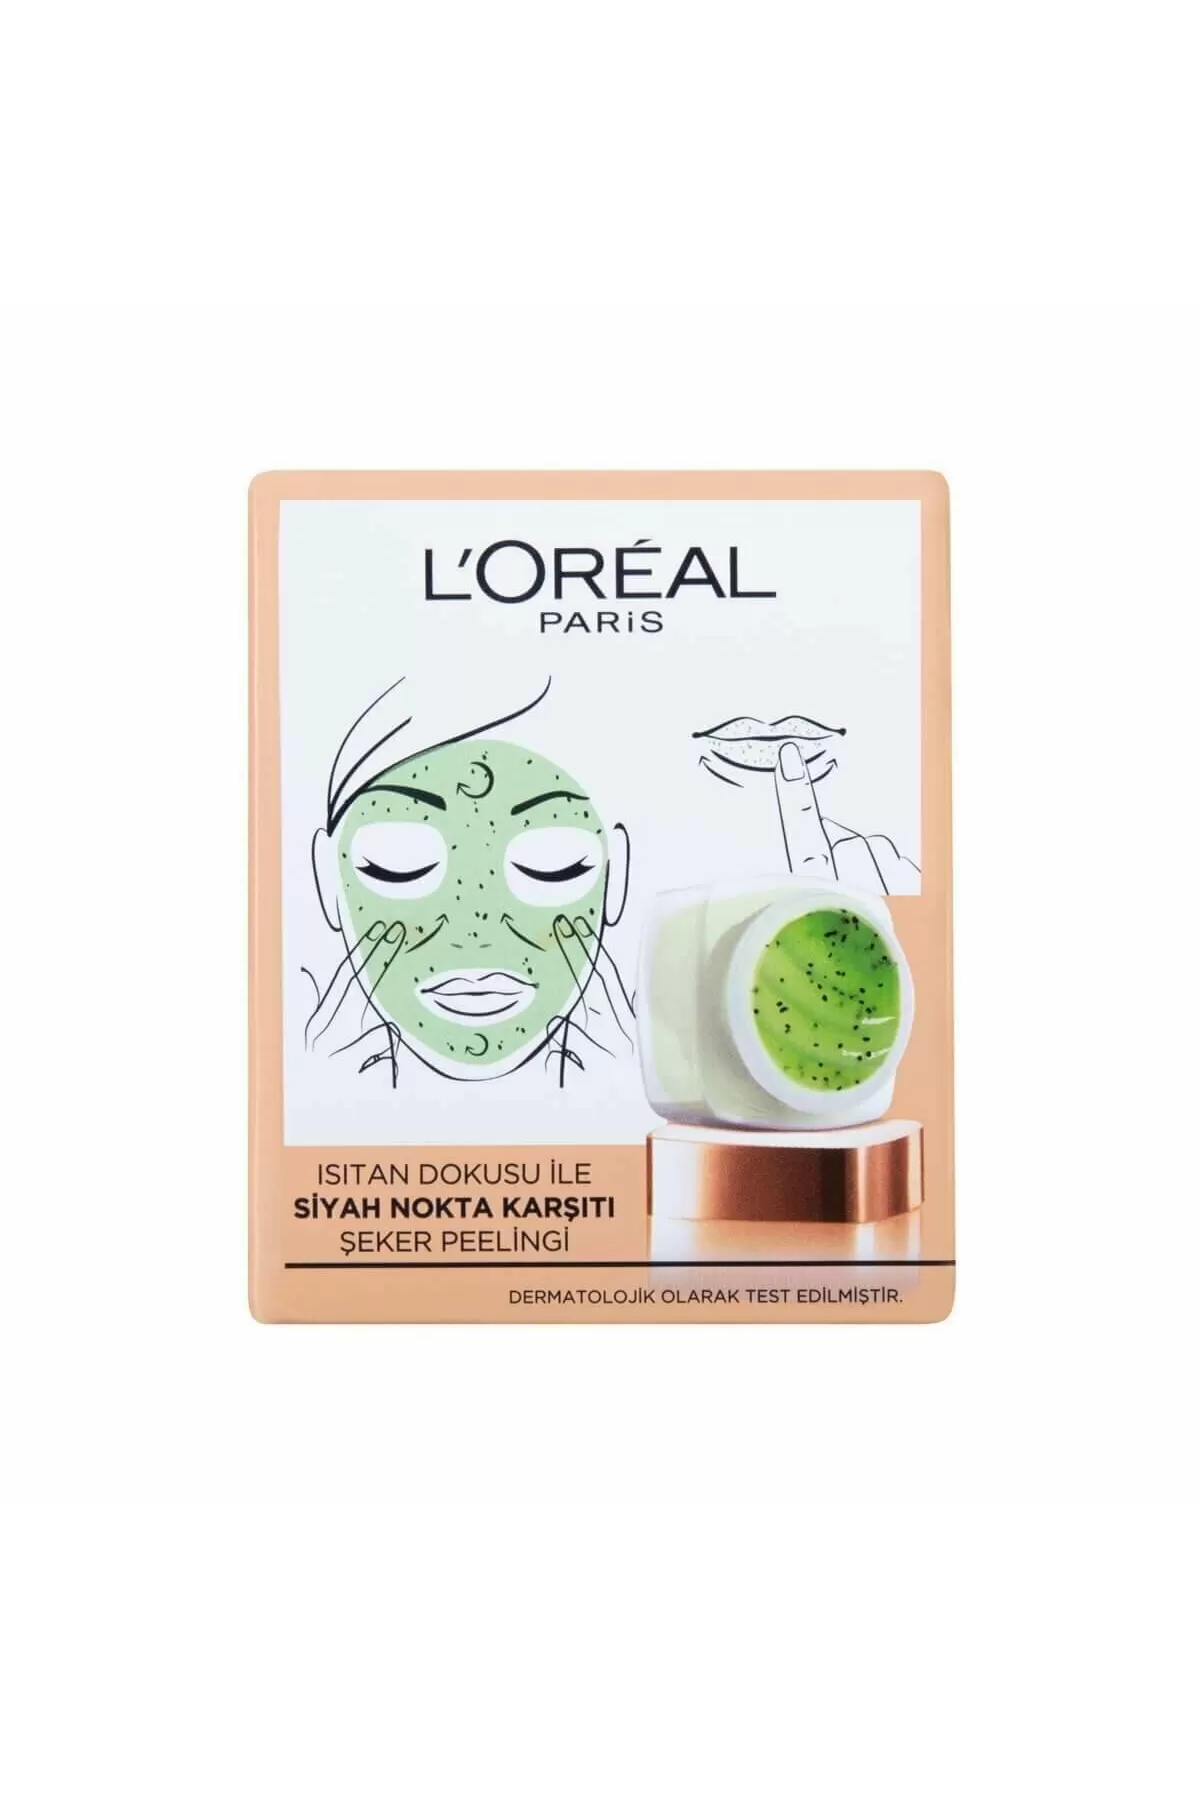 حاوی ۳ قند طبیعی،لطیف کننده پوست صورت،از بین برنده جوش سر سیاه، لورال پاریس L'Oreal Paris ماسک کیوی اسکراب صورت و لب